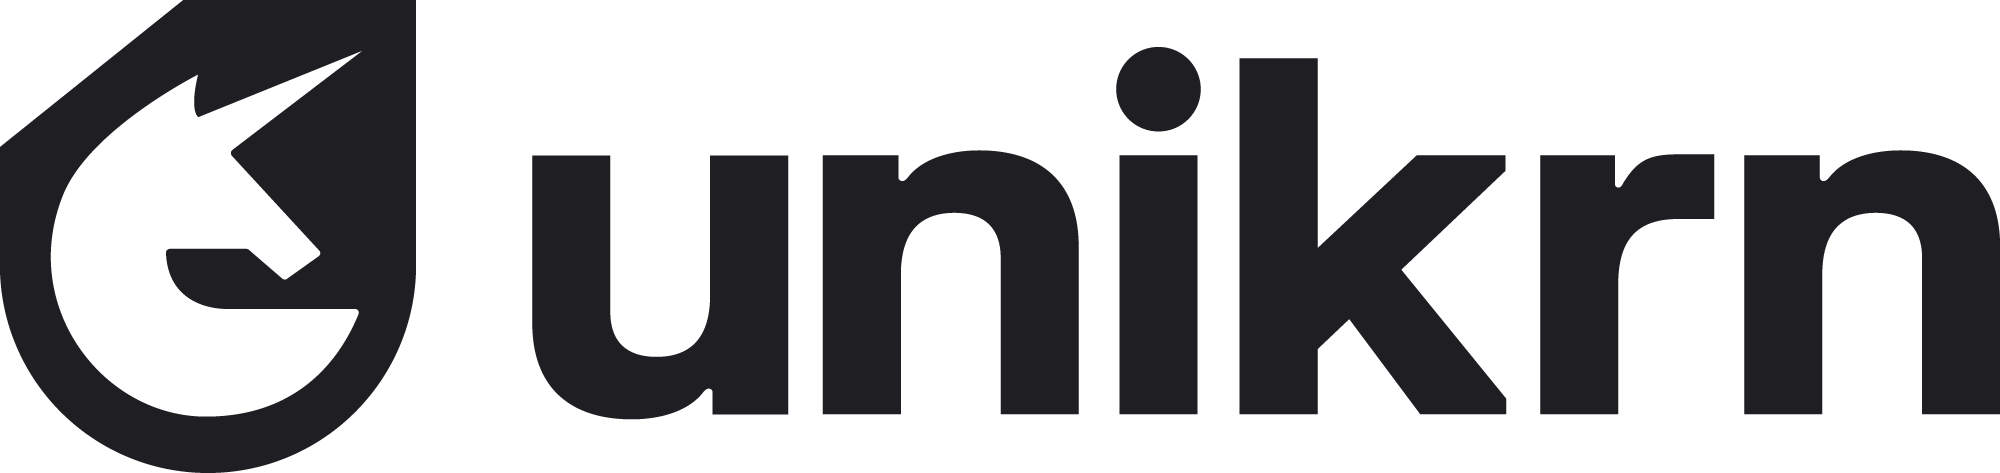 unikrn-logo-black